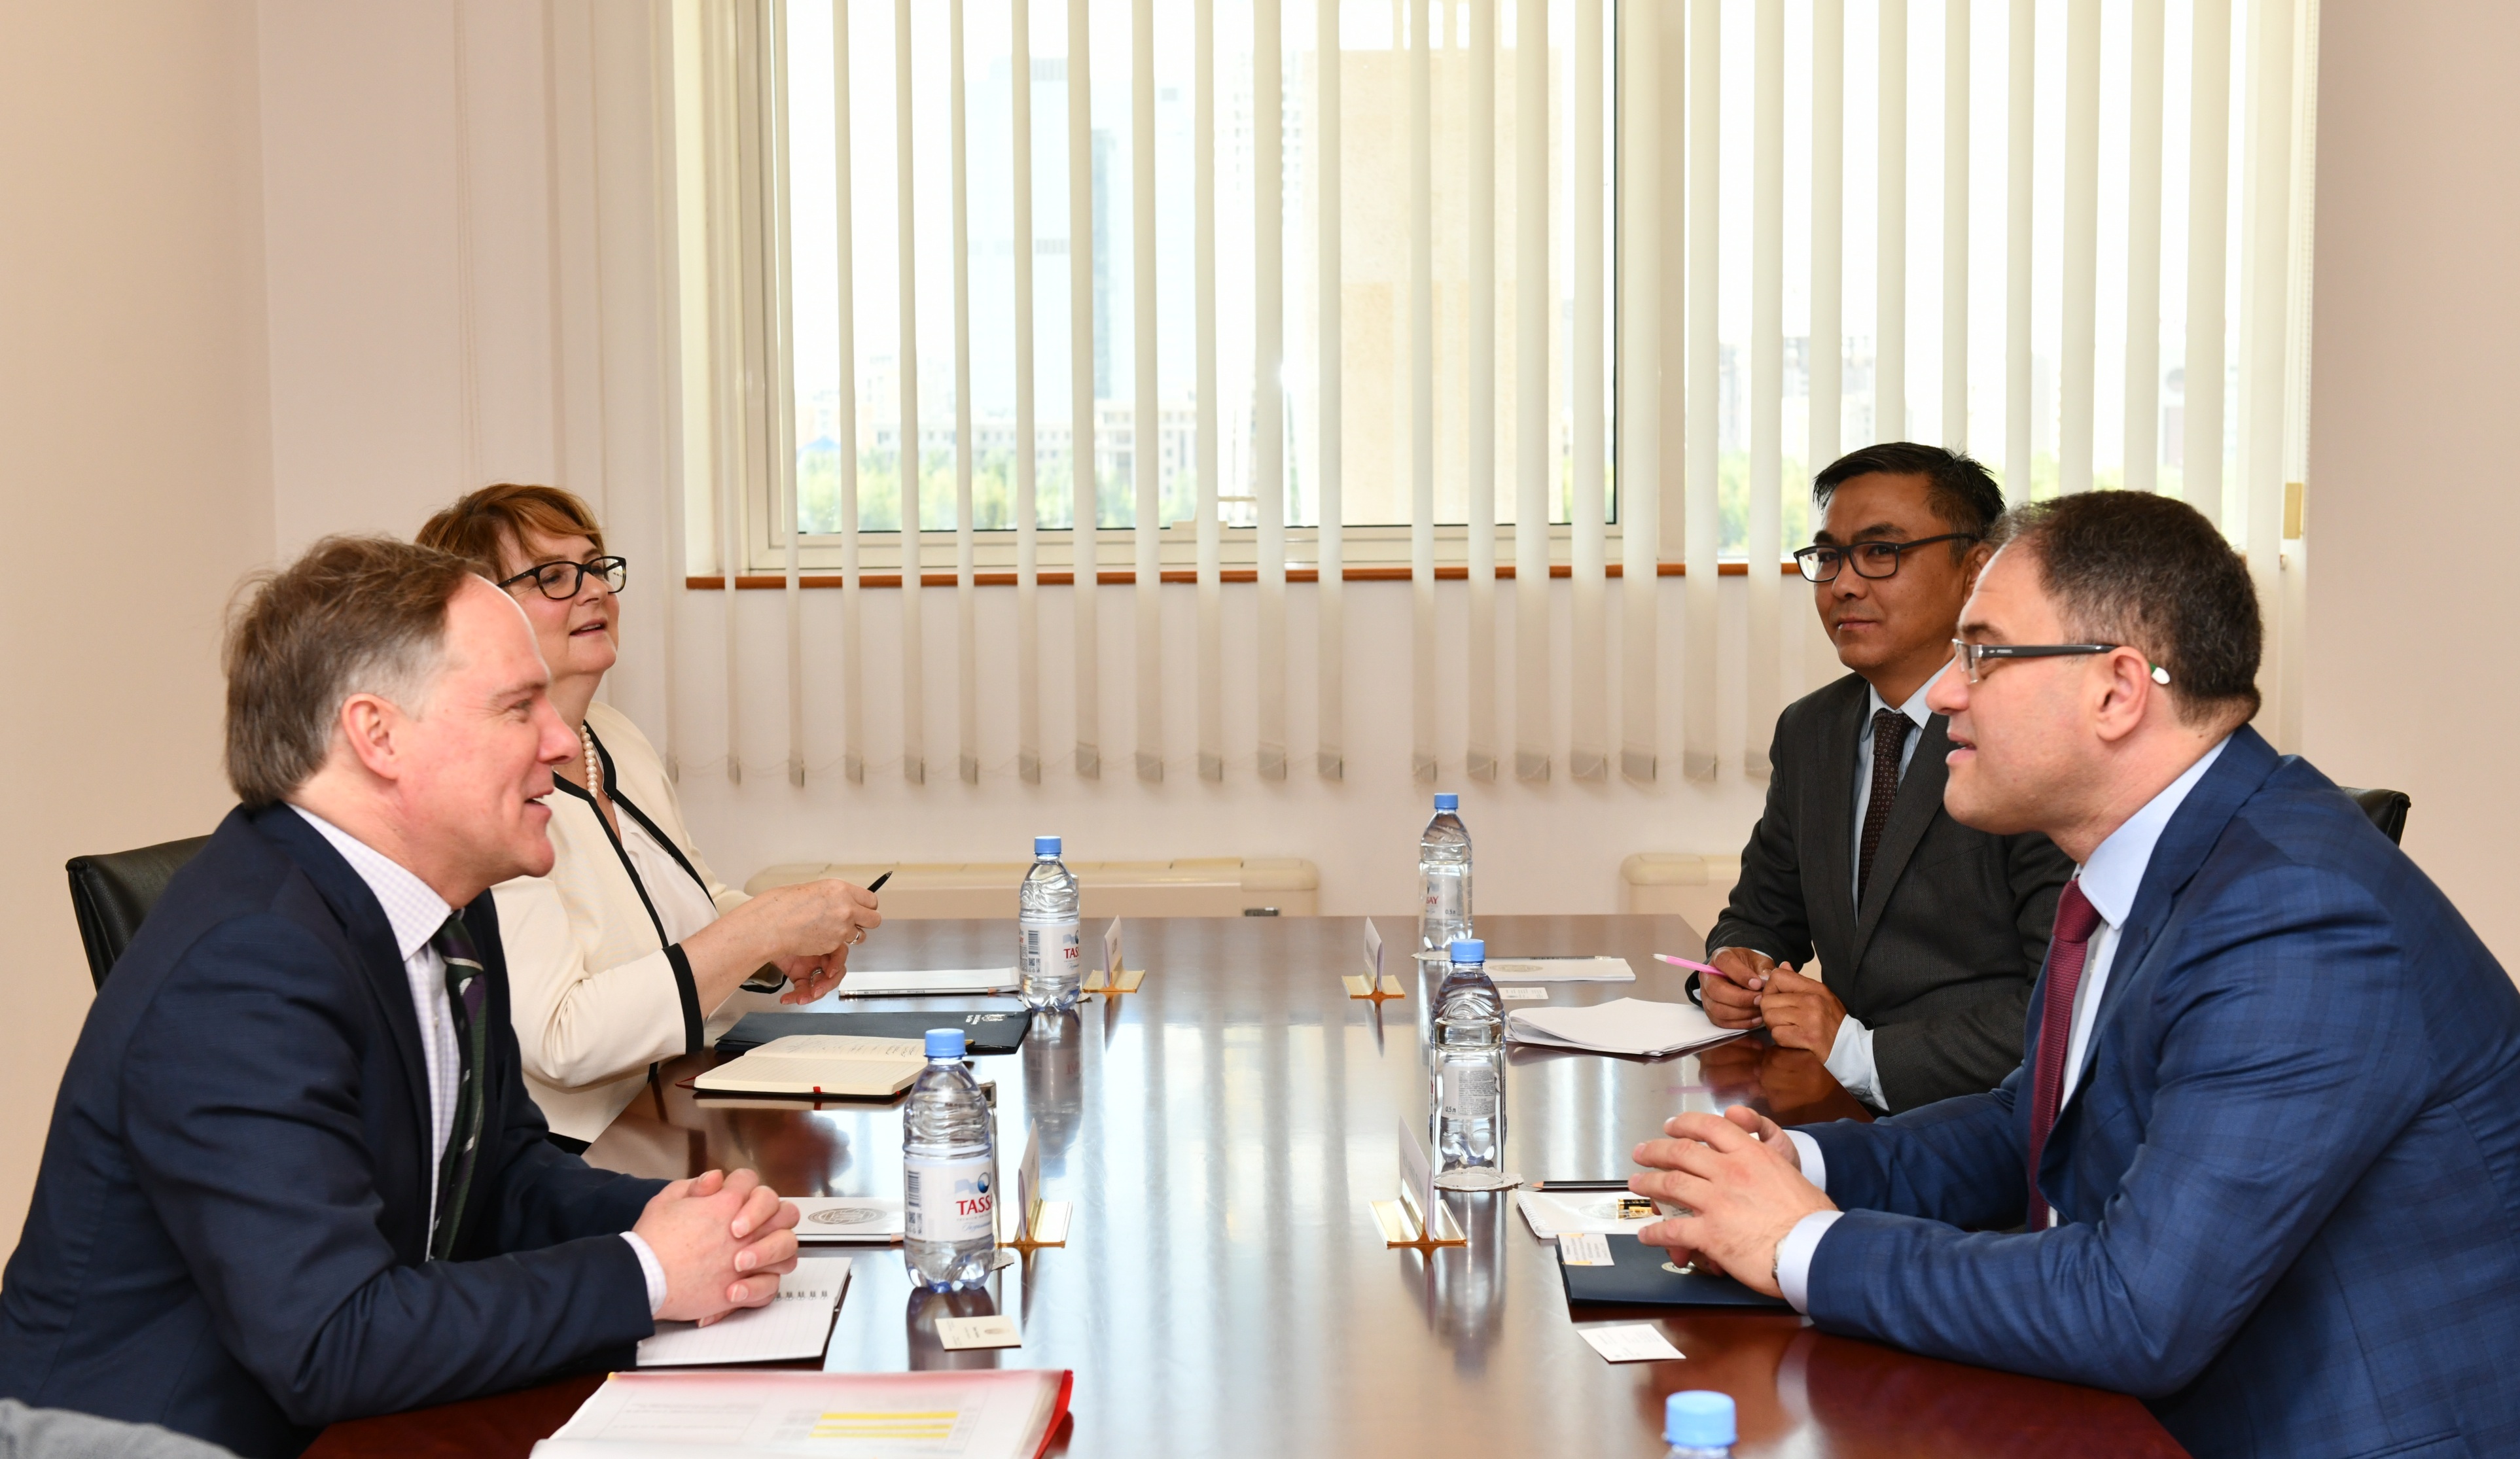 Состояние и перспективы казахстанско-британского сотрудничества обсудили в МИД РК